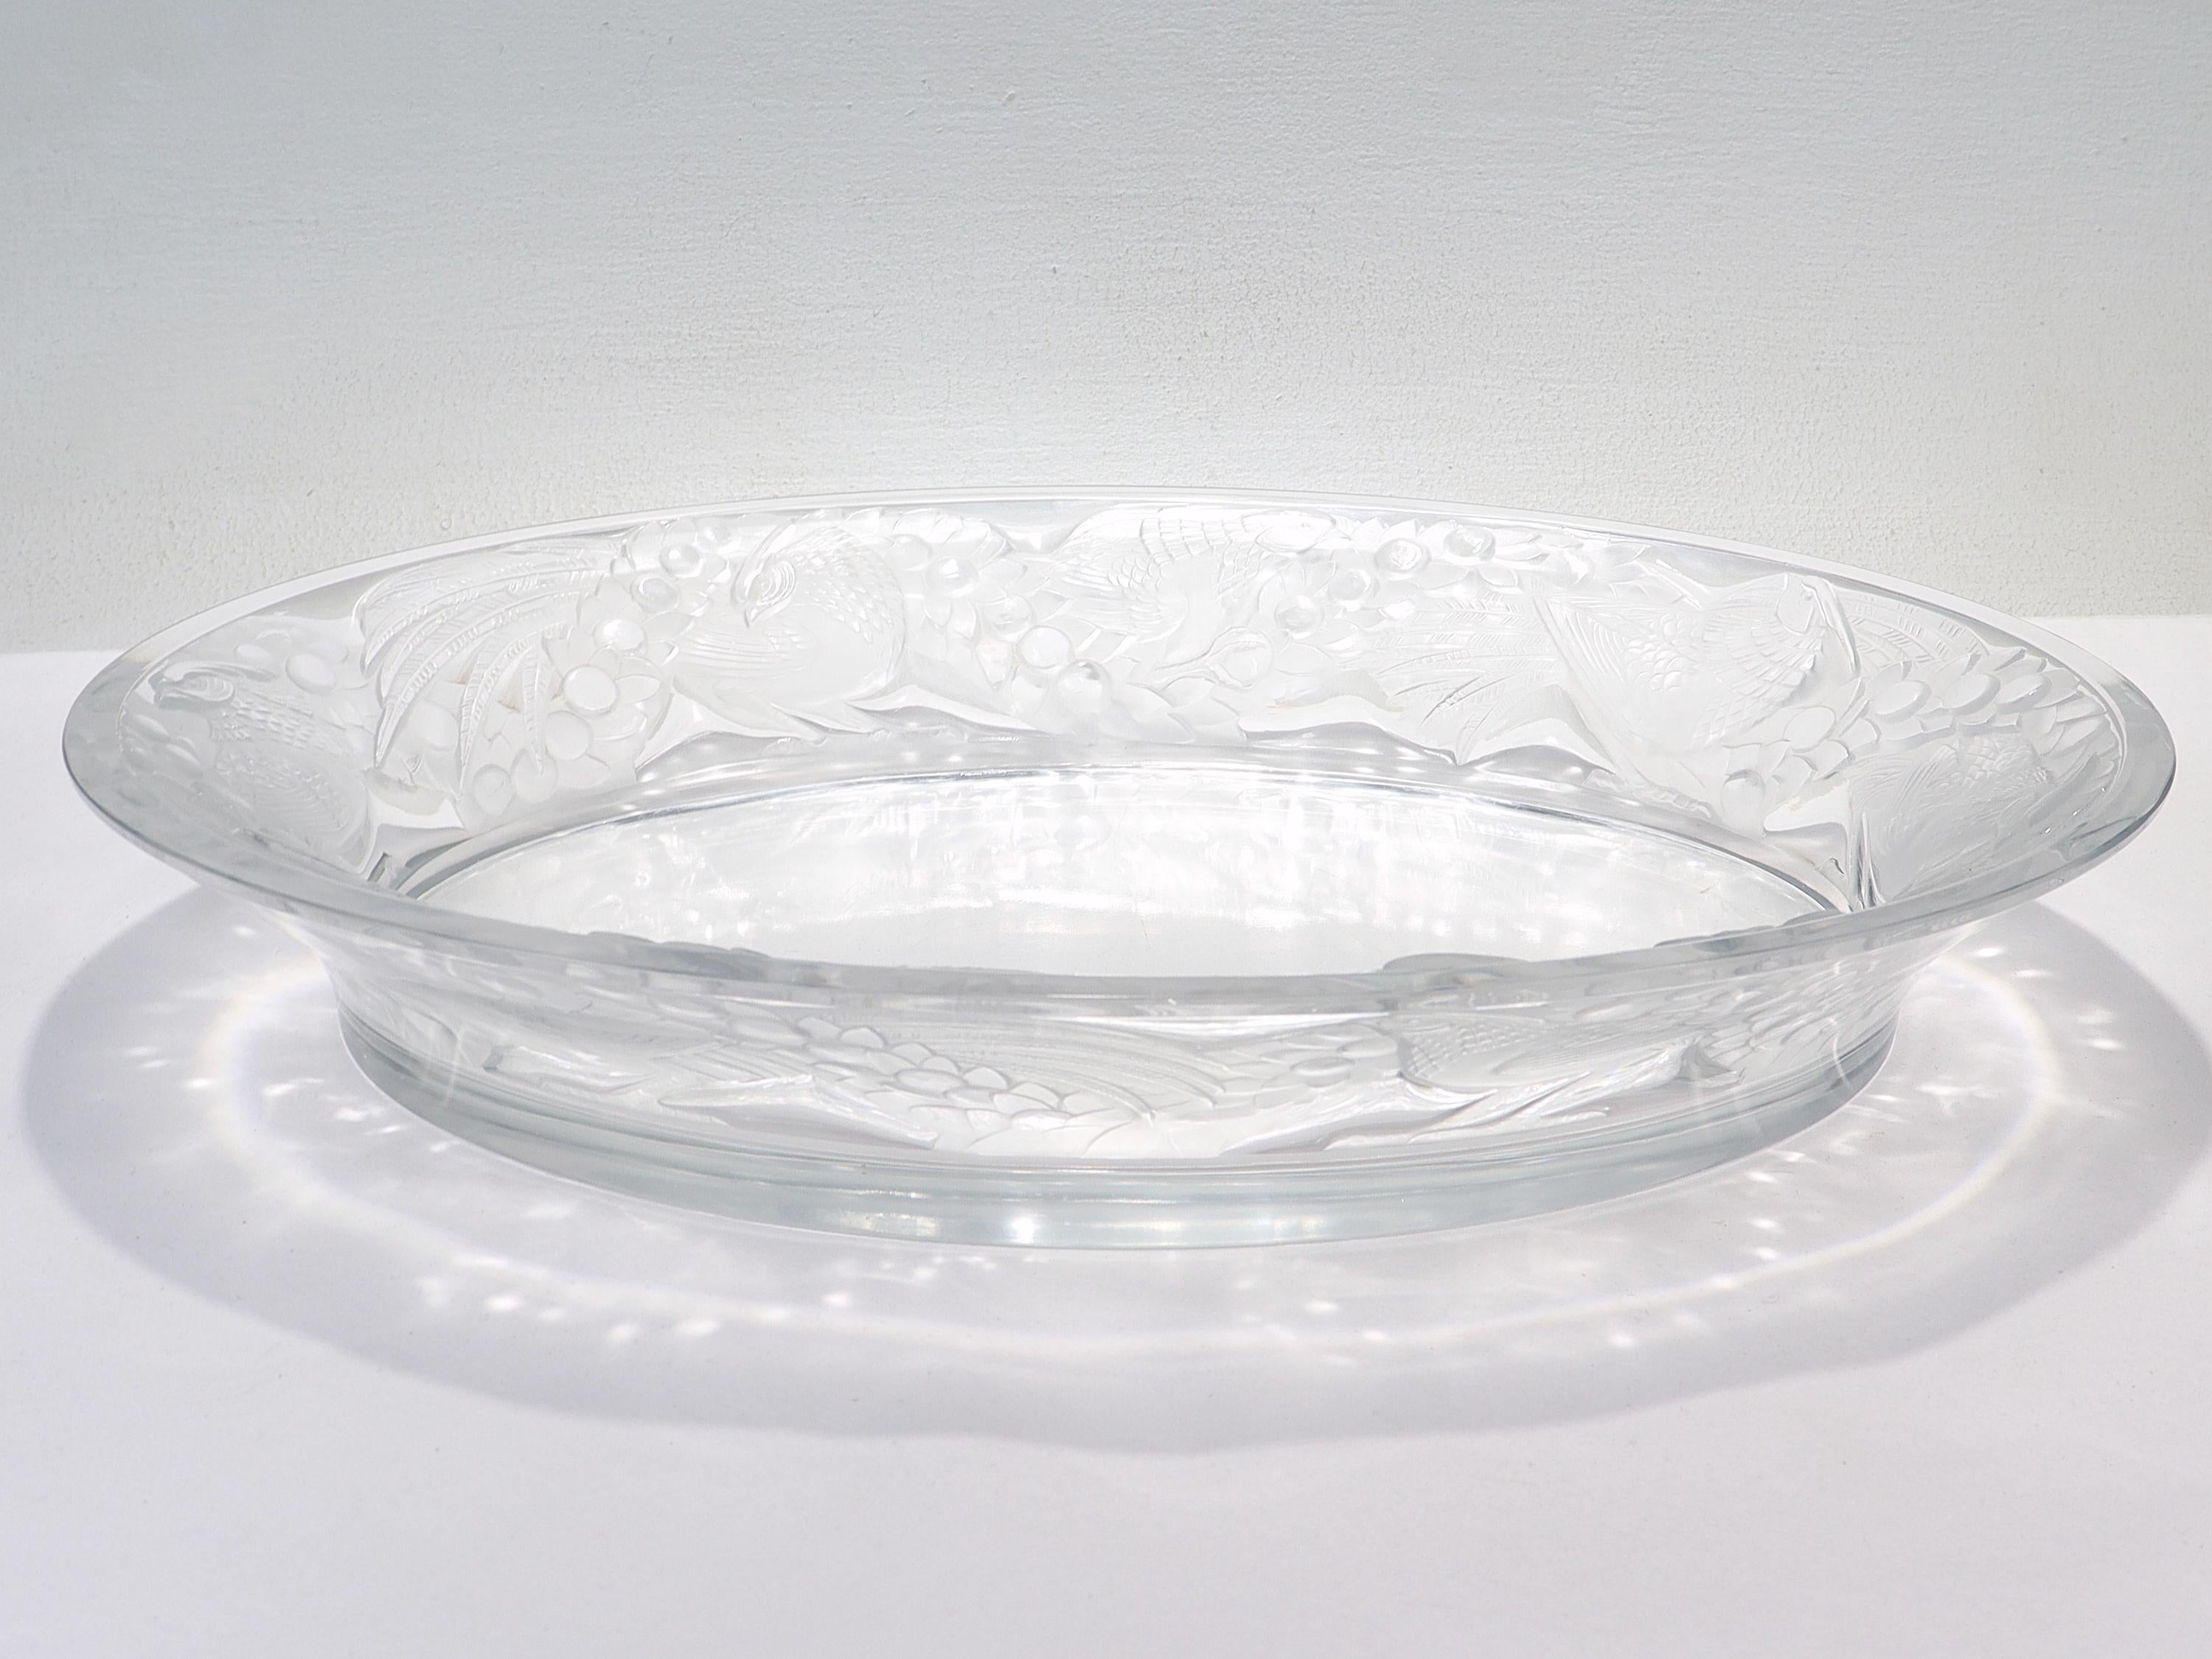 Antique Lalique Art Glass 'Faisans' Oval Bowl with Wide Rim Decor For Sale 3